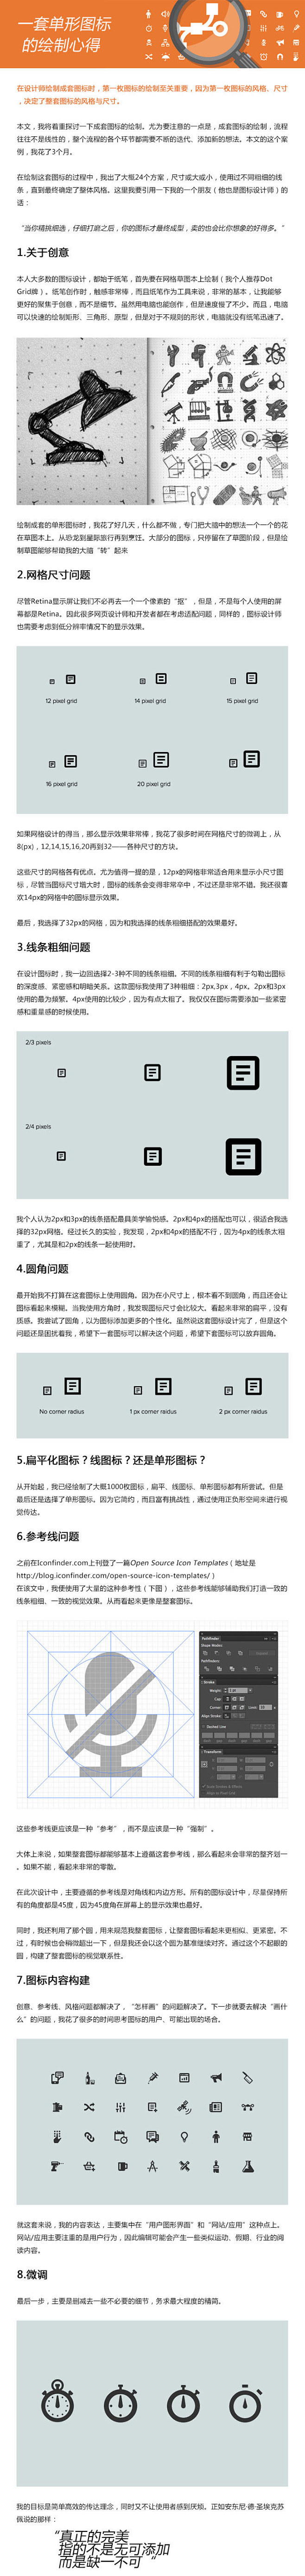 单形图标绘制心得-UI中国-专业界面设计...